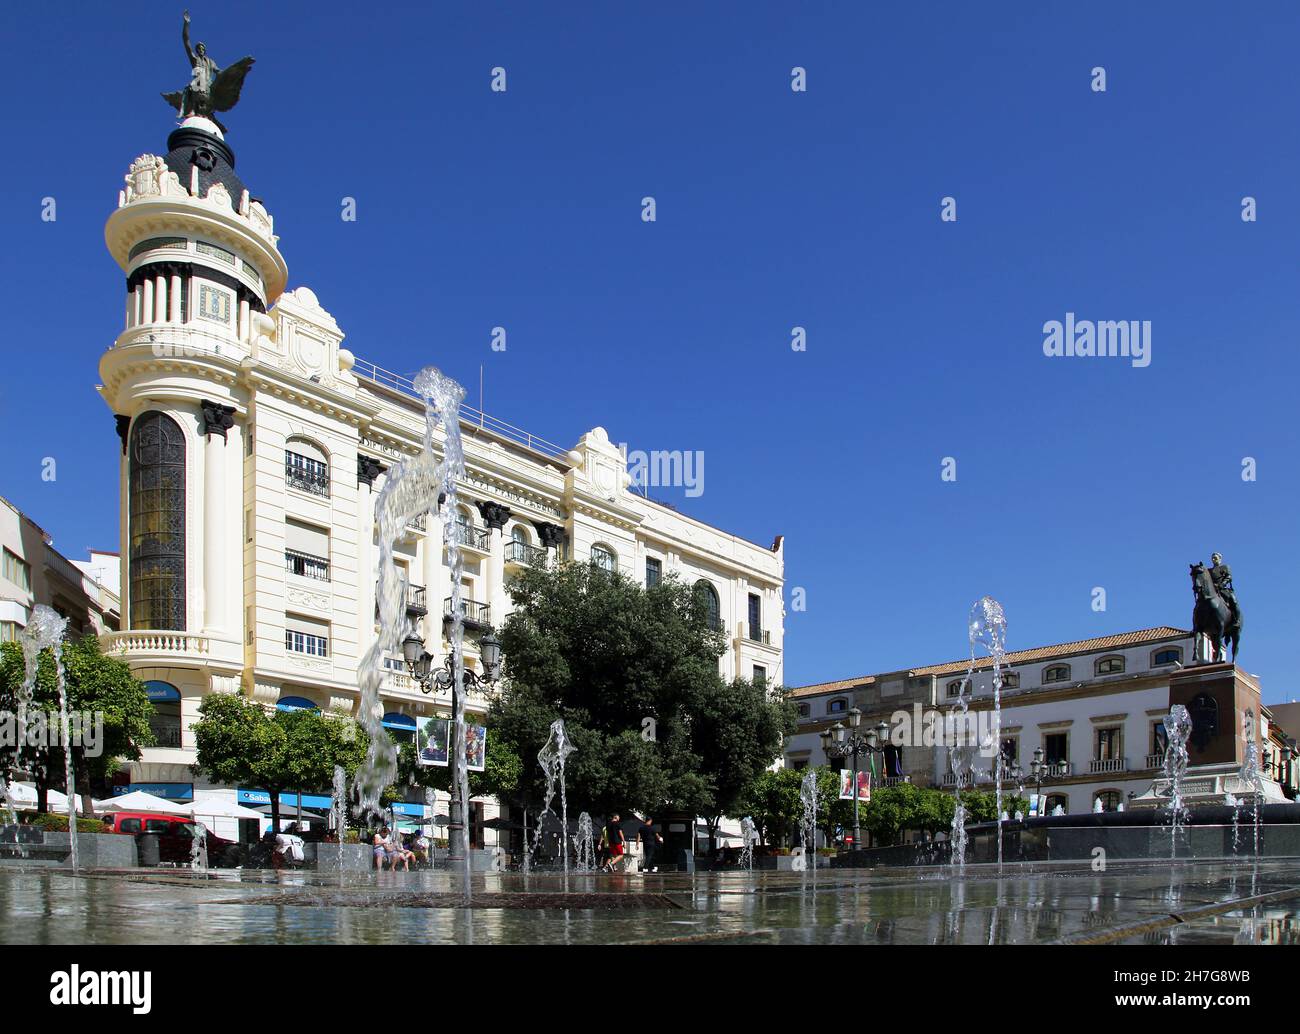 The Tendillas Square,Plaza de las Tendillas in Cordoba, Andalusia, Spain Stock Photo